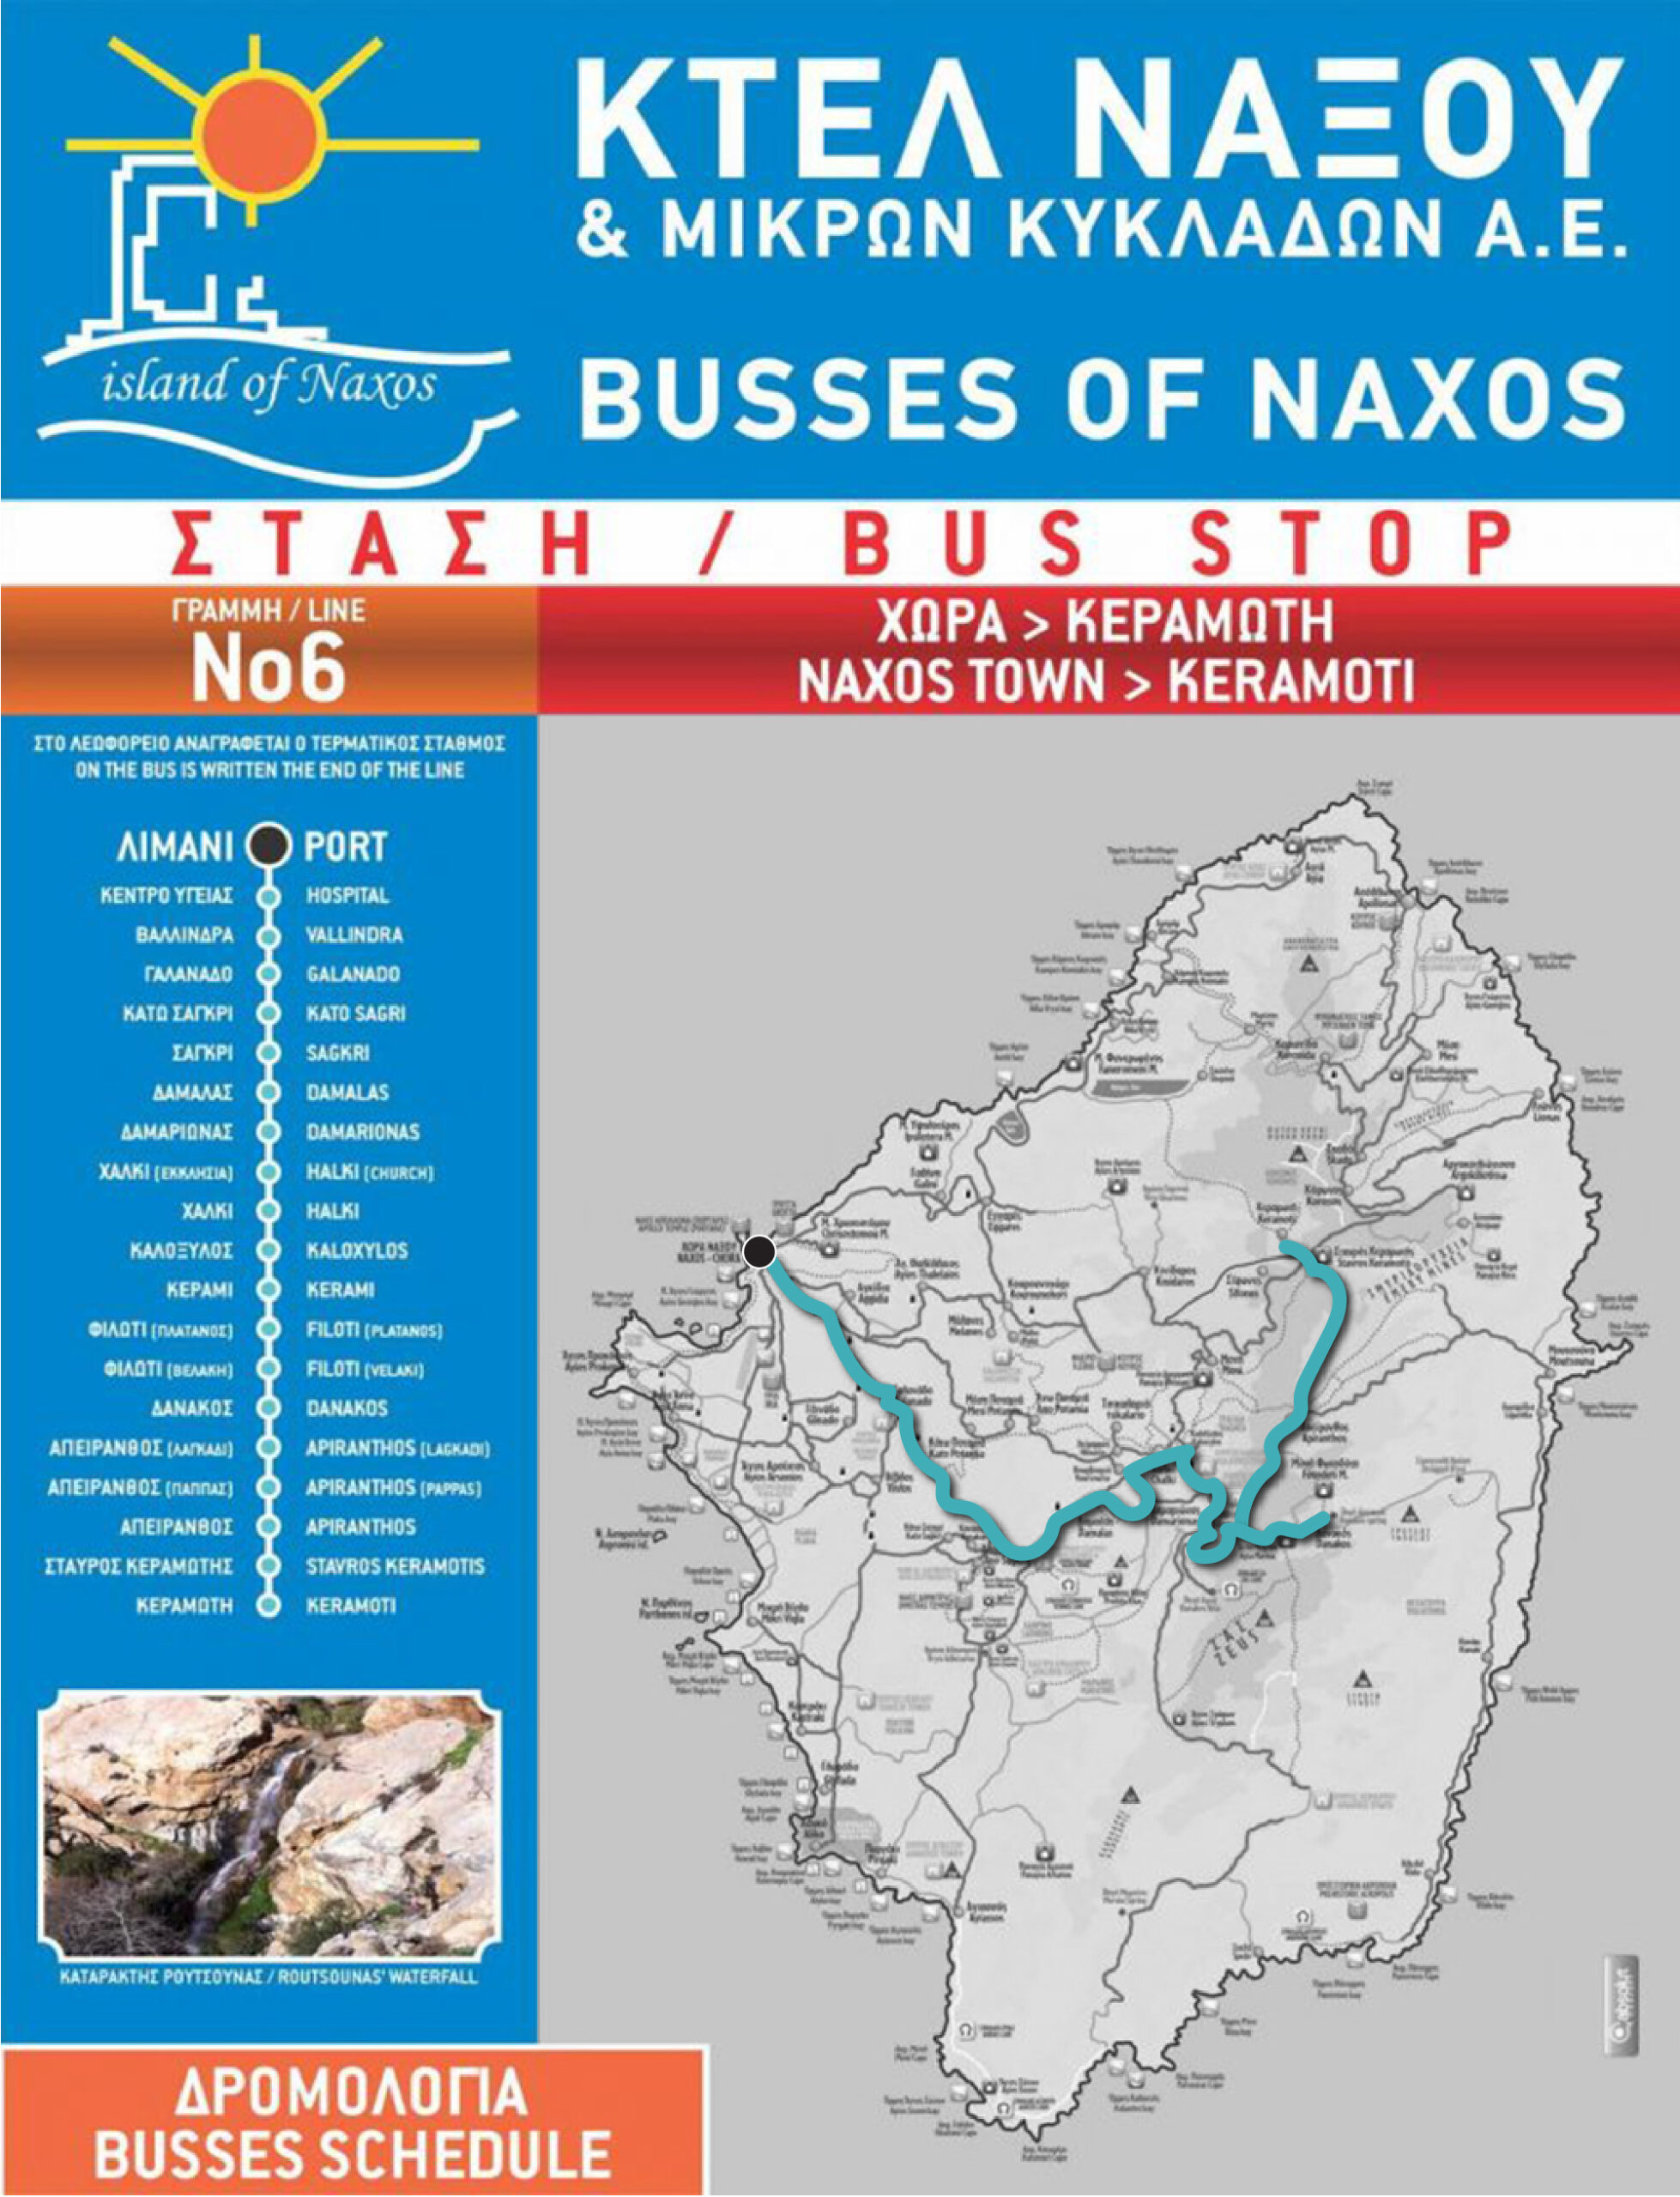 Naxos bus route #6.